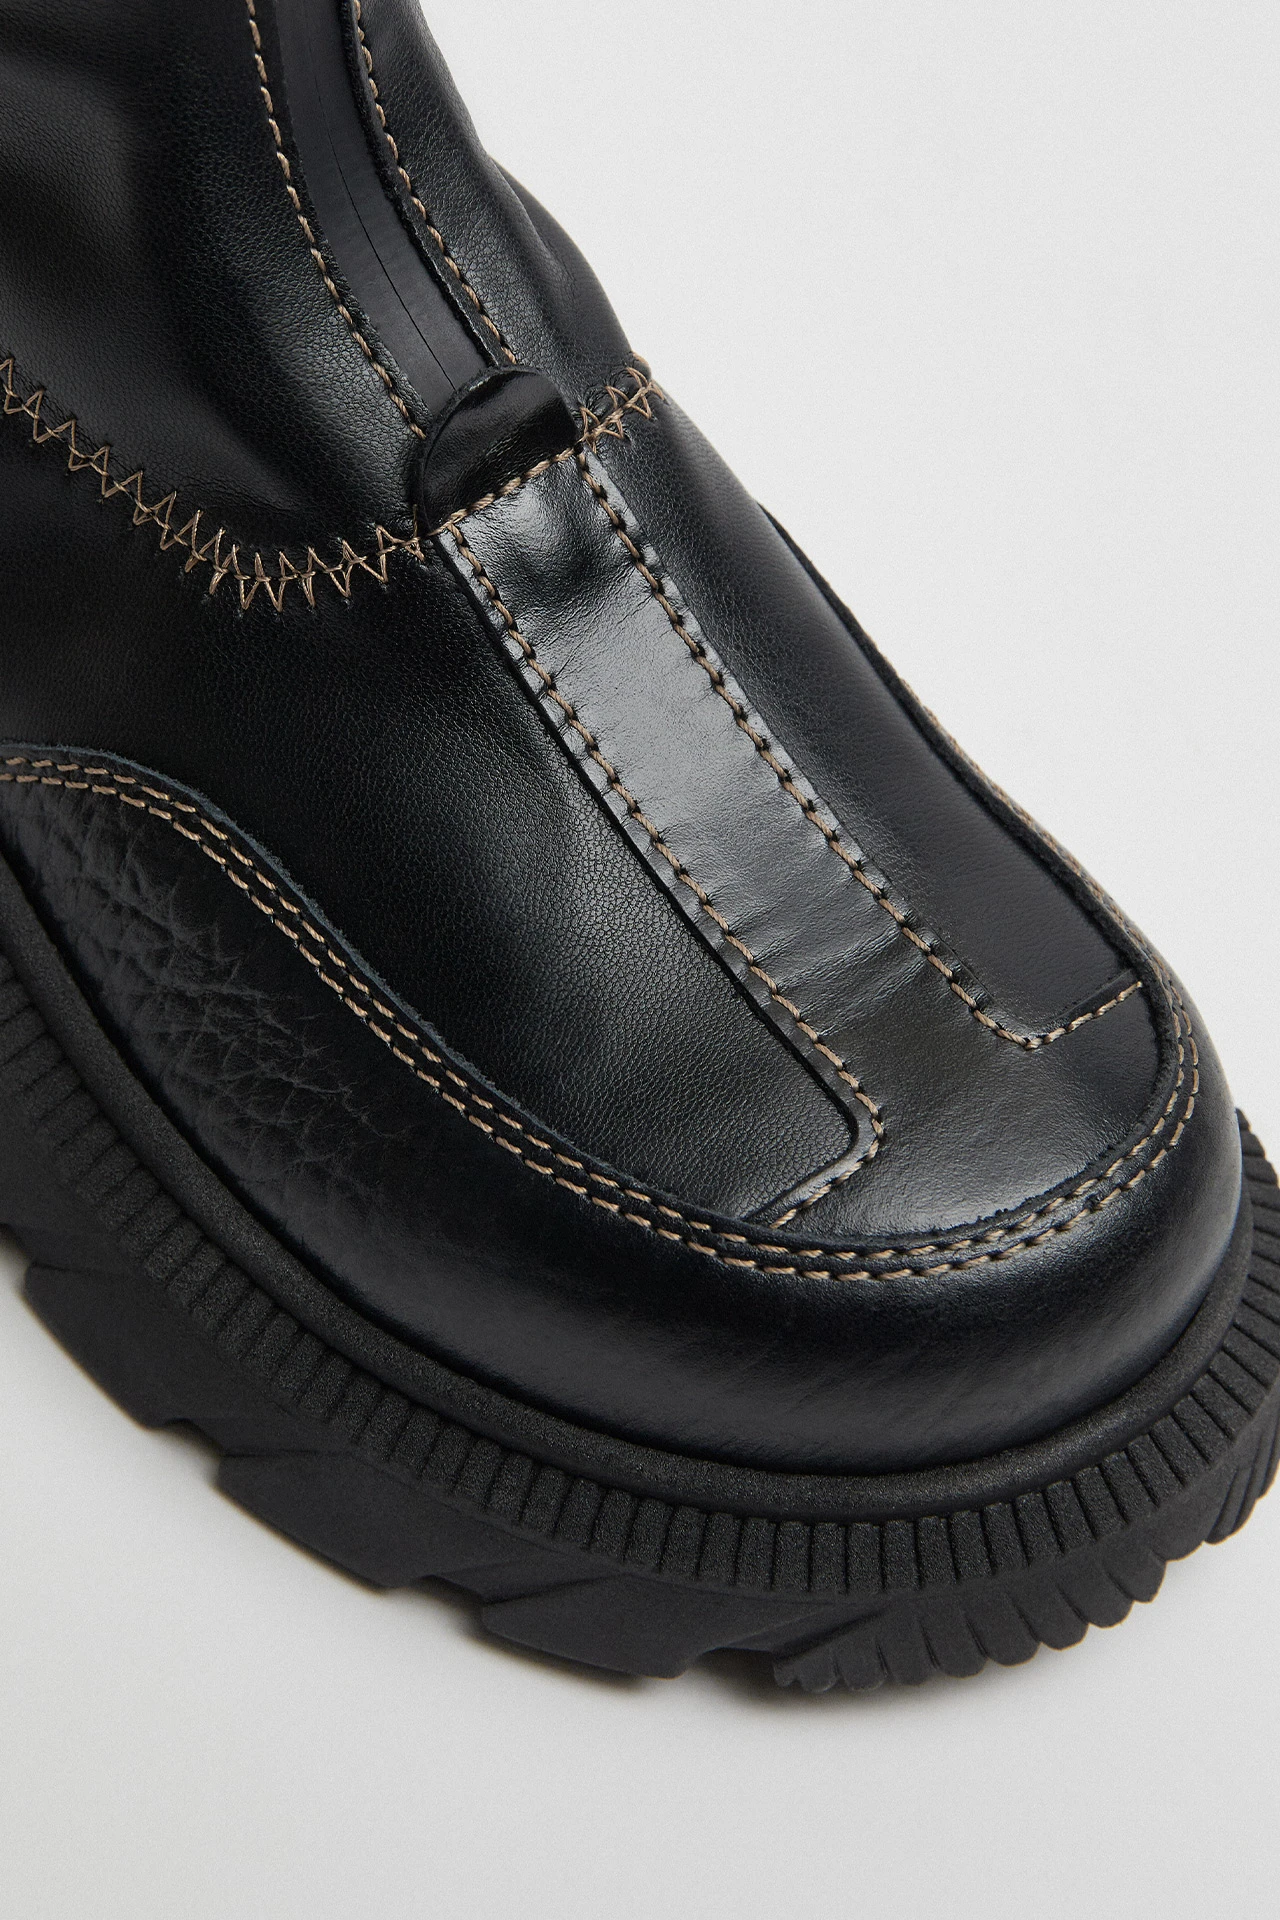 E8-danica-black-beige-ankle-boots-04